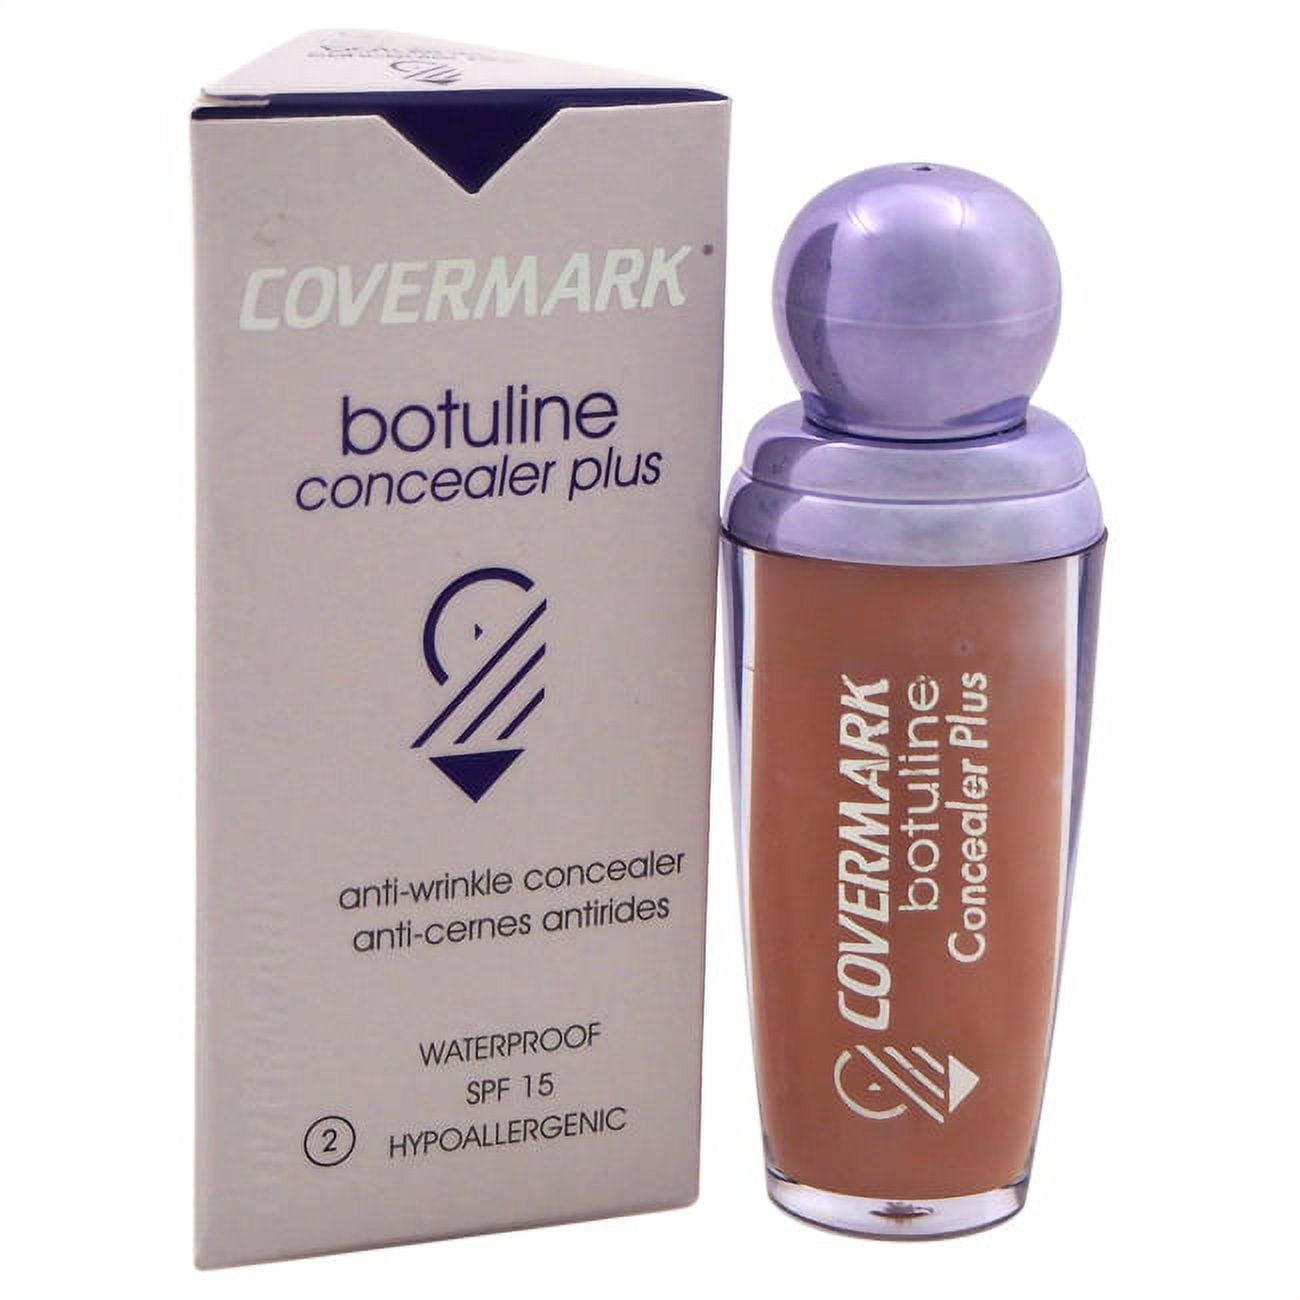 Botuline Concealer Plus Waterproof SPF 15 - 2 by Covermark for Women - 0.27  oz Concealer